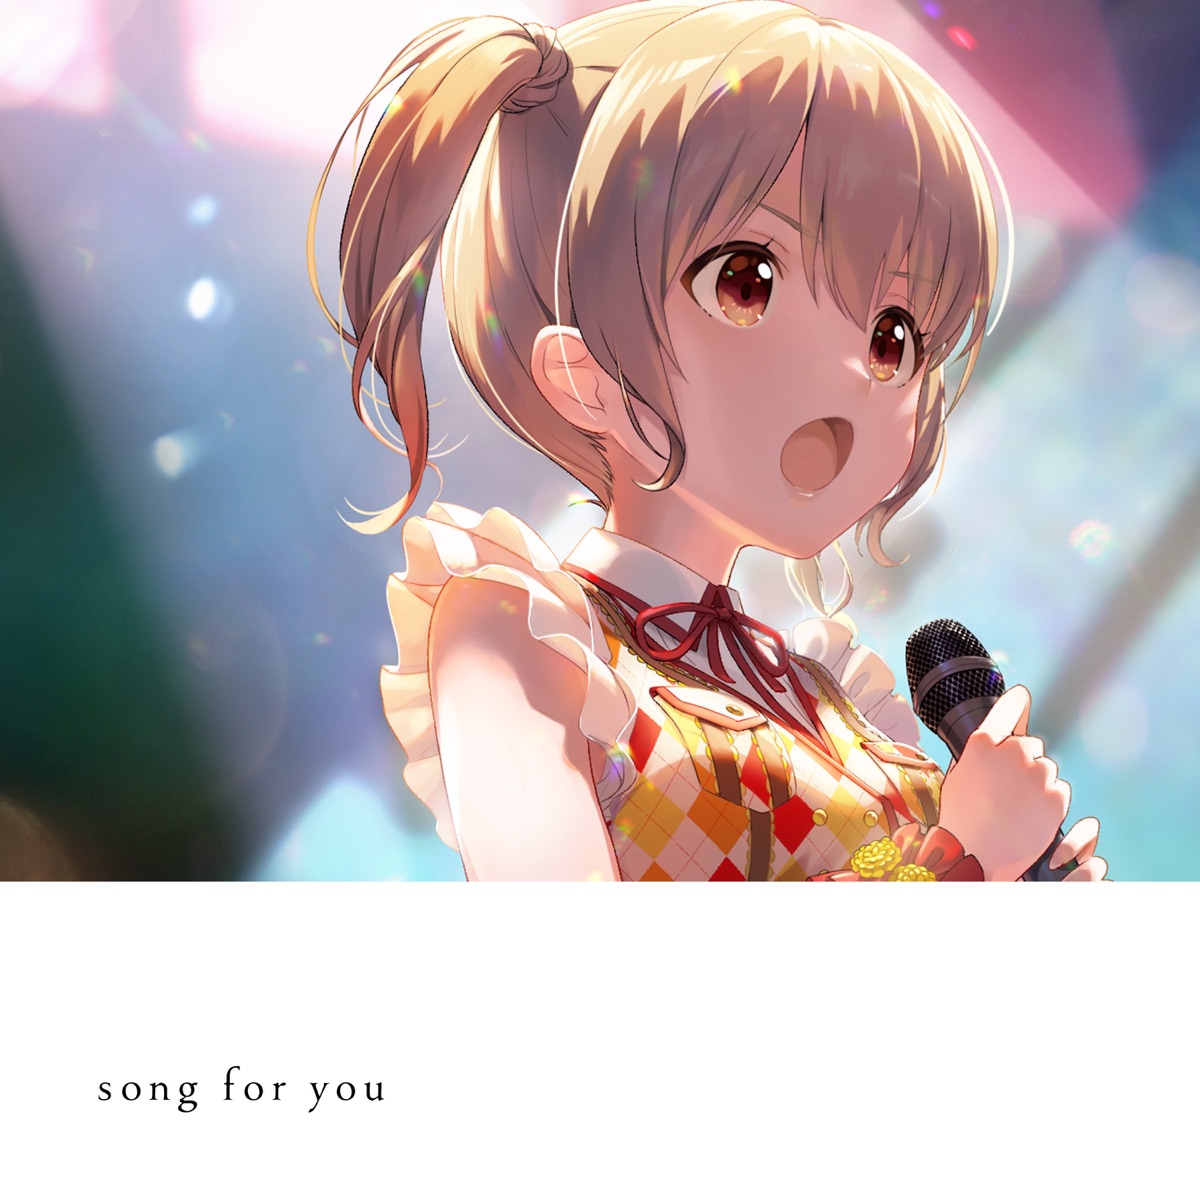 『サニーピース - song for you(サニーピースver.)』収録の『song for you(サニーピースver.)』ジャケット